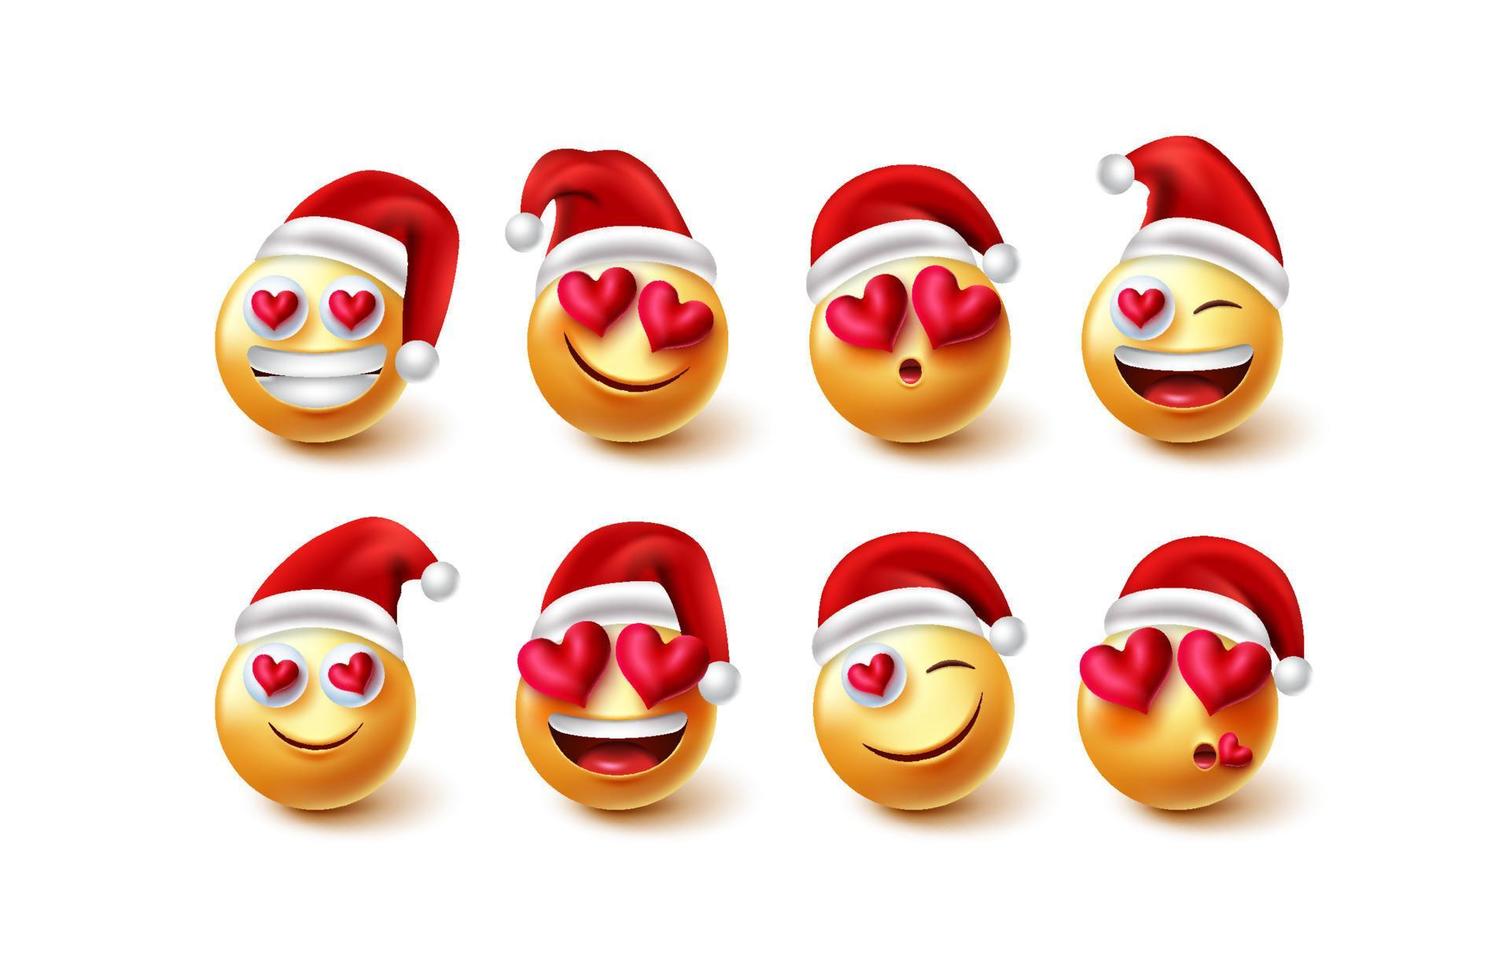 emojis enamorados conjunto de vectores de santa. Personajes navideños de emoji con expresiones faciales enamoradas aisladas en fondo blanco para un diseño encantador de colección de personajes de emoticonos navideños. ilustración vectorial.